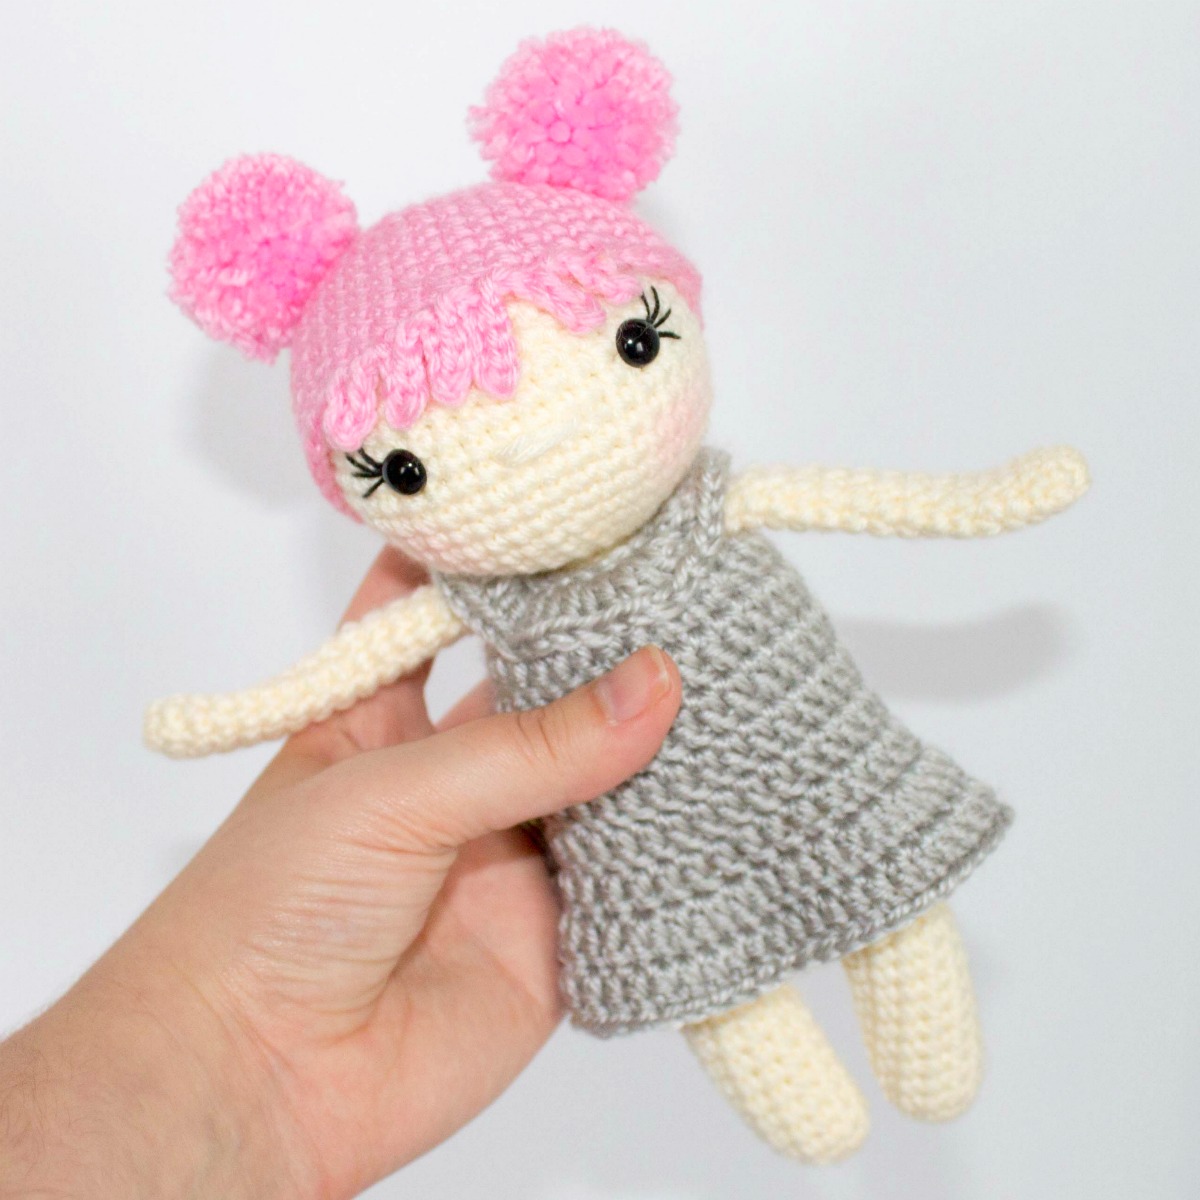 Free Crochet Doll Pattern- The Friendly Zoey